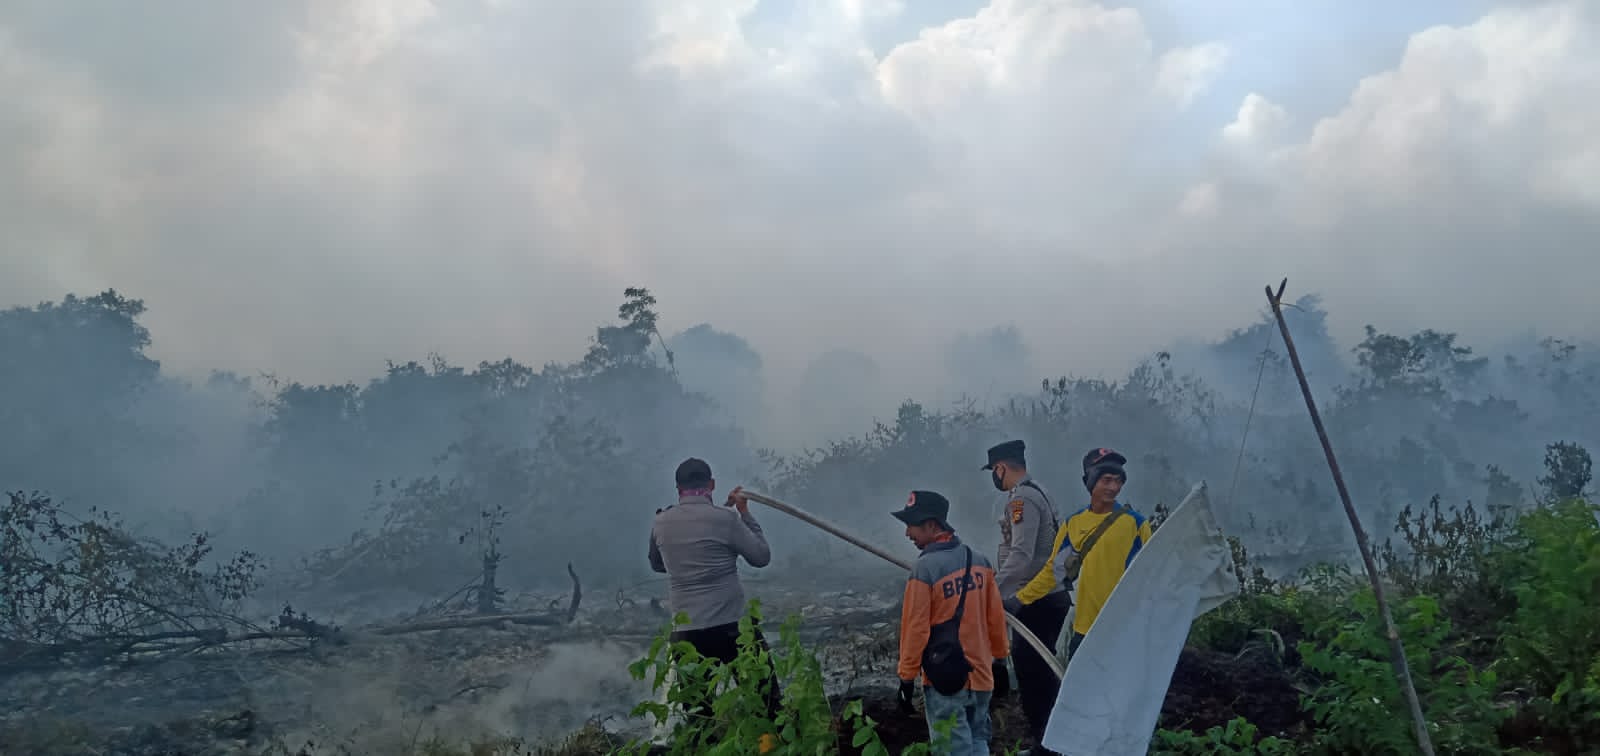 Kebakaran hutan dan lahan di Riau, sudah meluas ke seluruh kabupaten kota. Rokah Hilir, salah satu yang alami karhutla cukup luas. Foto: BPBD Rokan Hilir